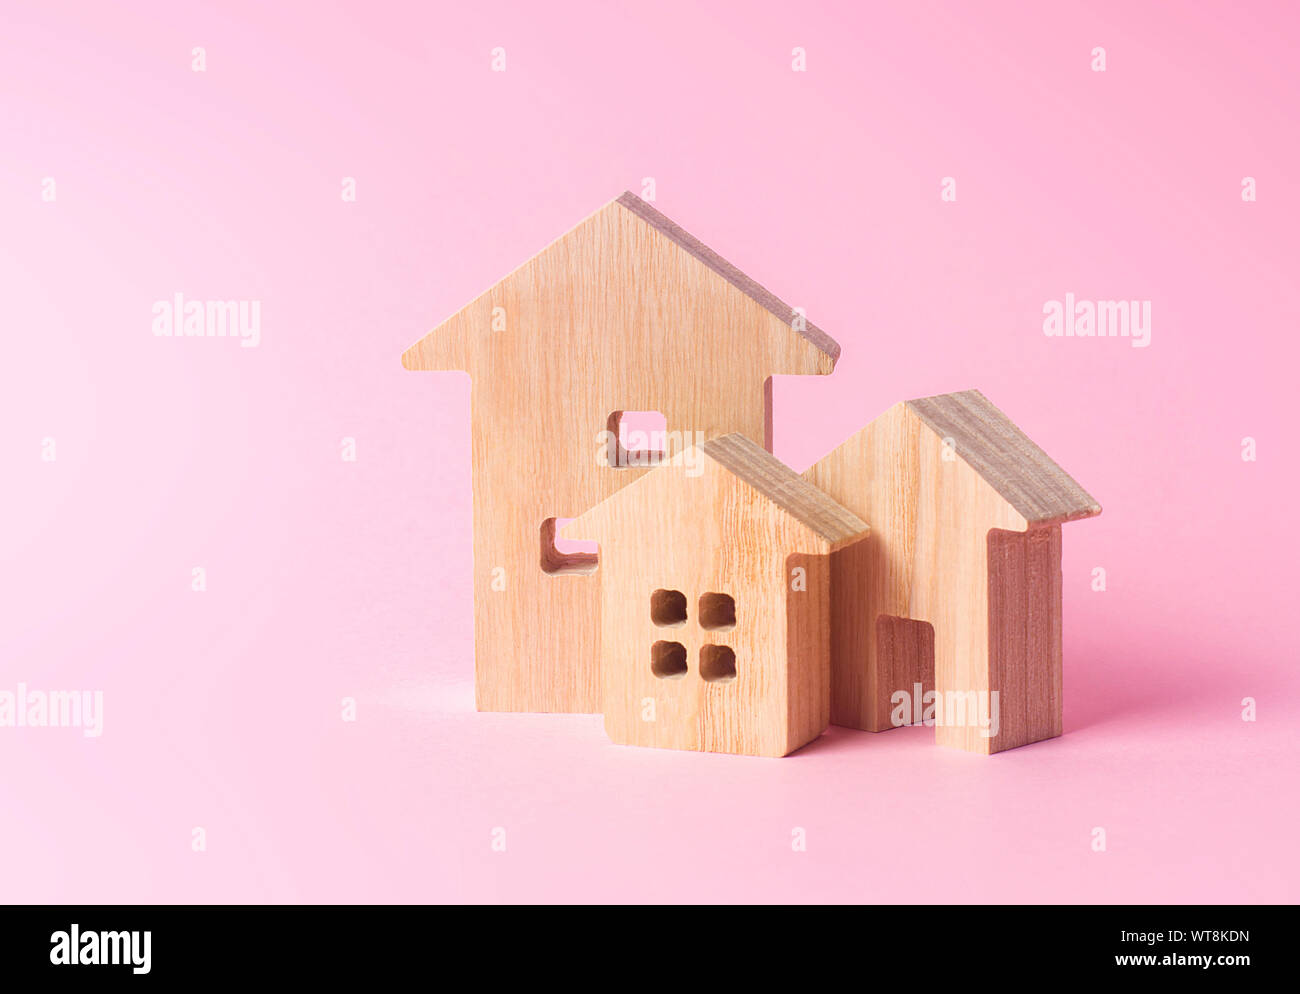 Drei Häuser auf einem rosa Hintergrund. Kauf und Verkauf von Immobilien, Bau. Wohnungen und Wohngebäude in einer Stadt oder Siedlung. Inve Stockfoto